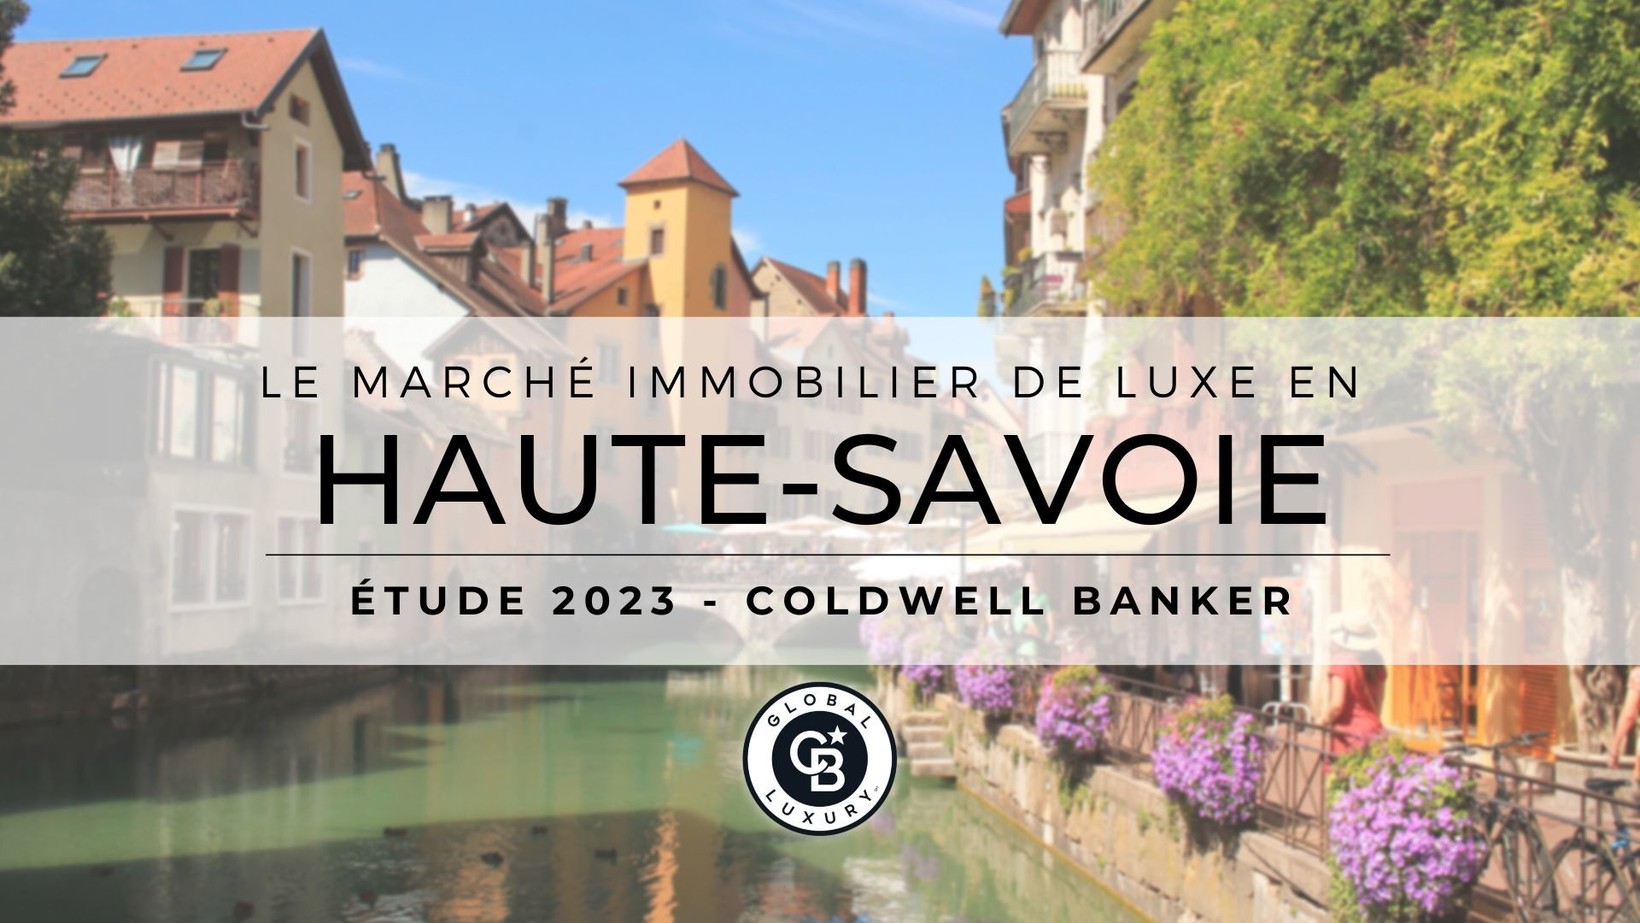 Le marché immobilier de luxe en Haute-Savoie en 2022